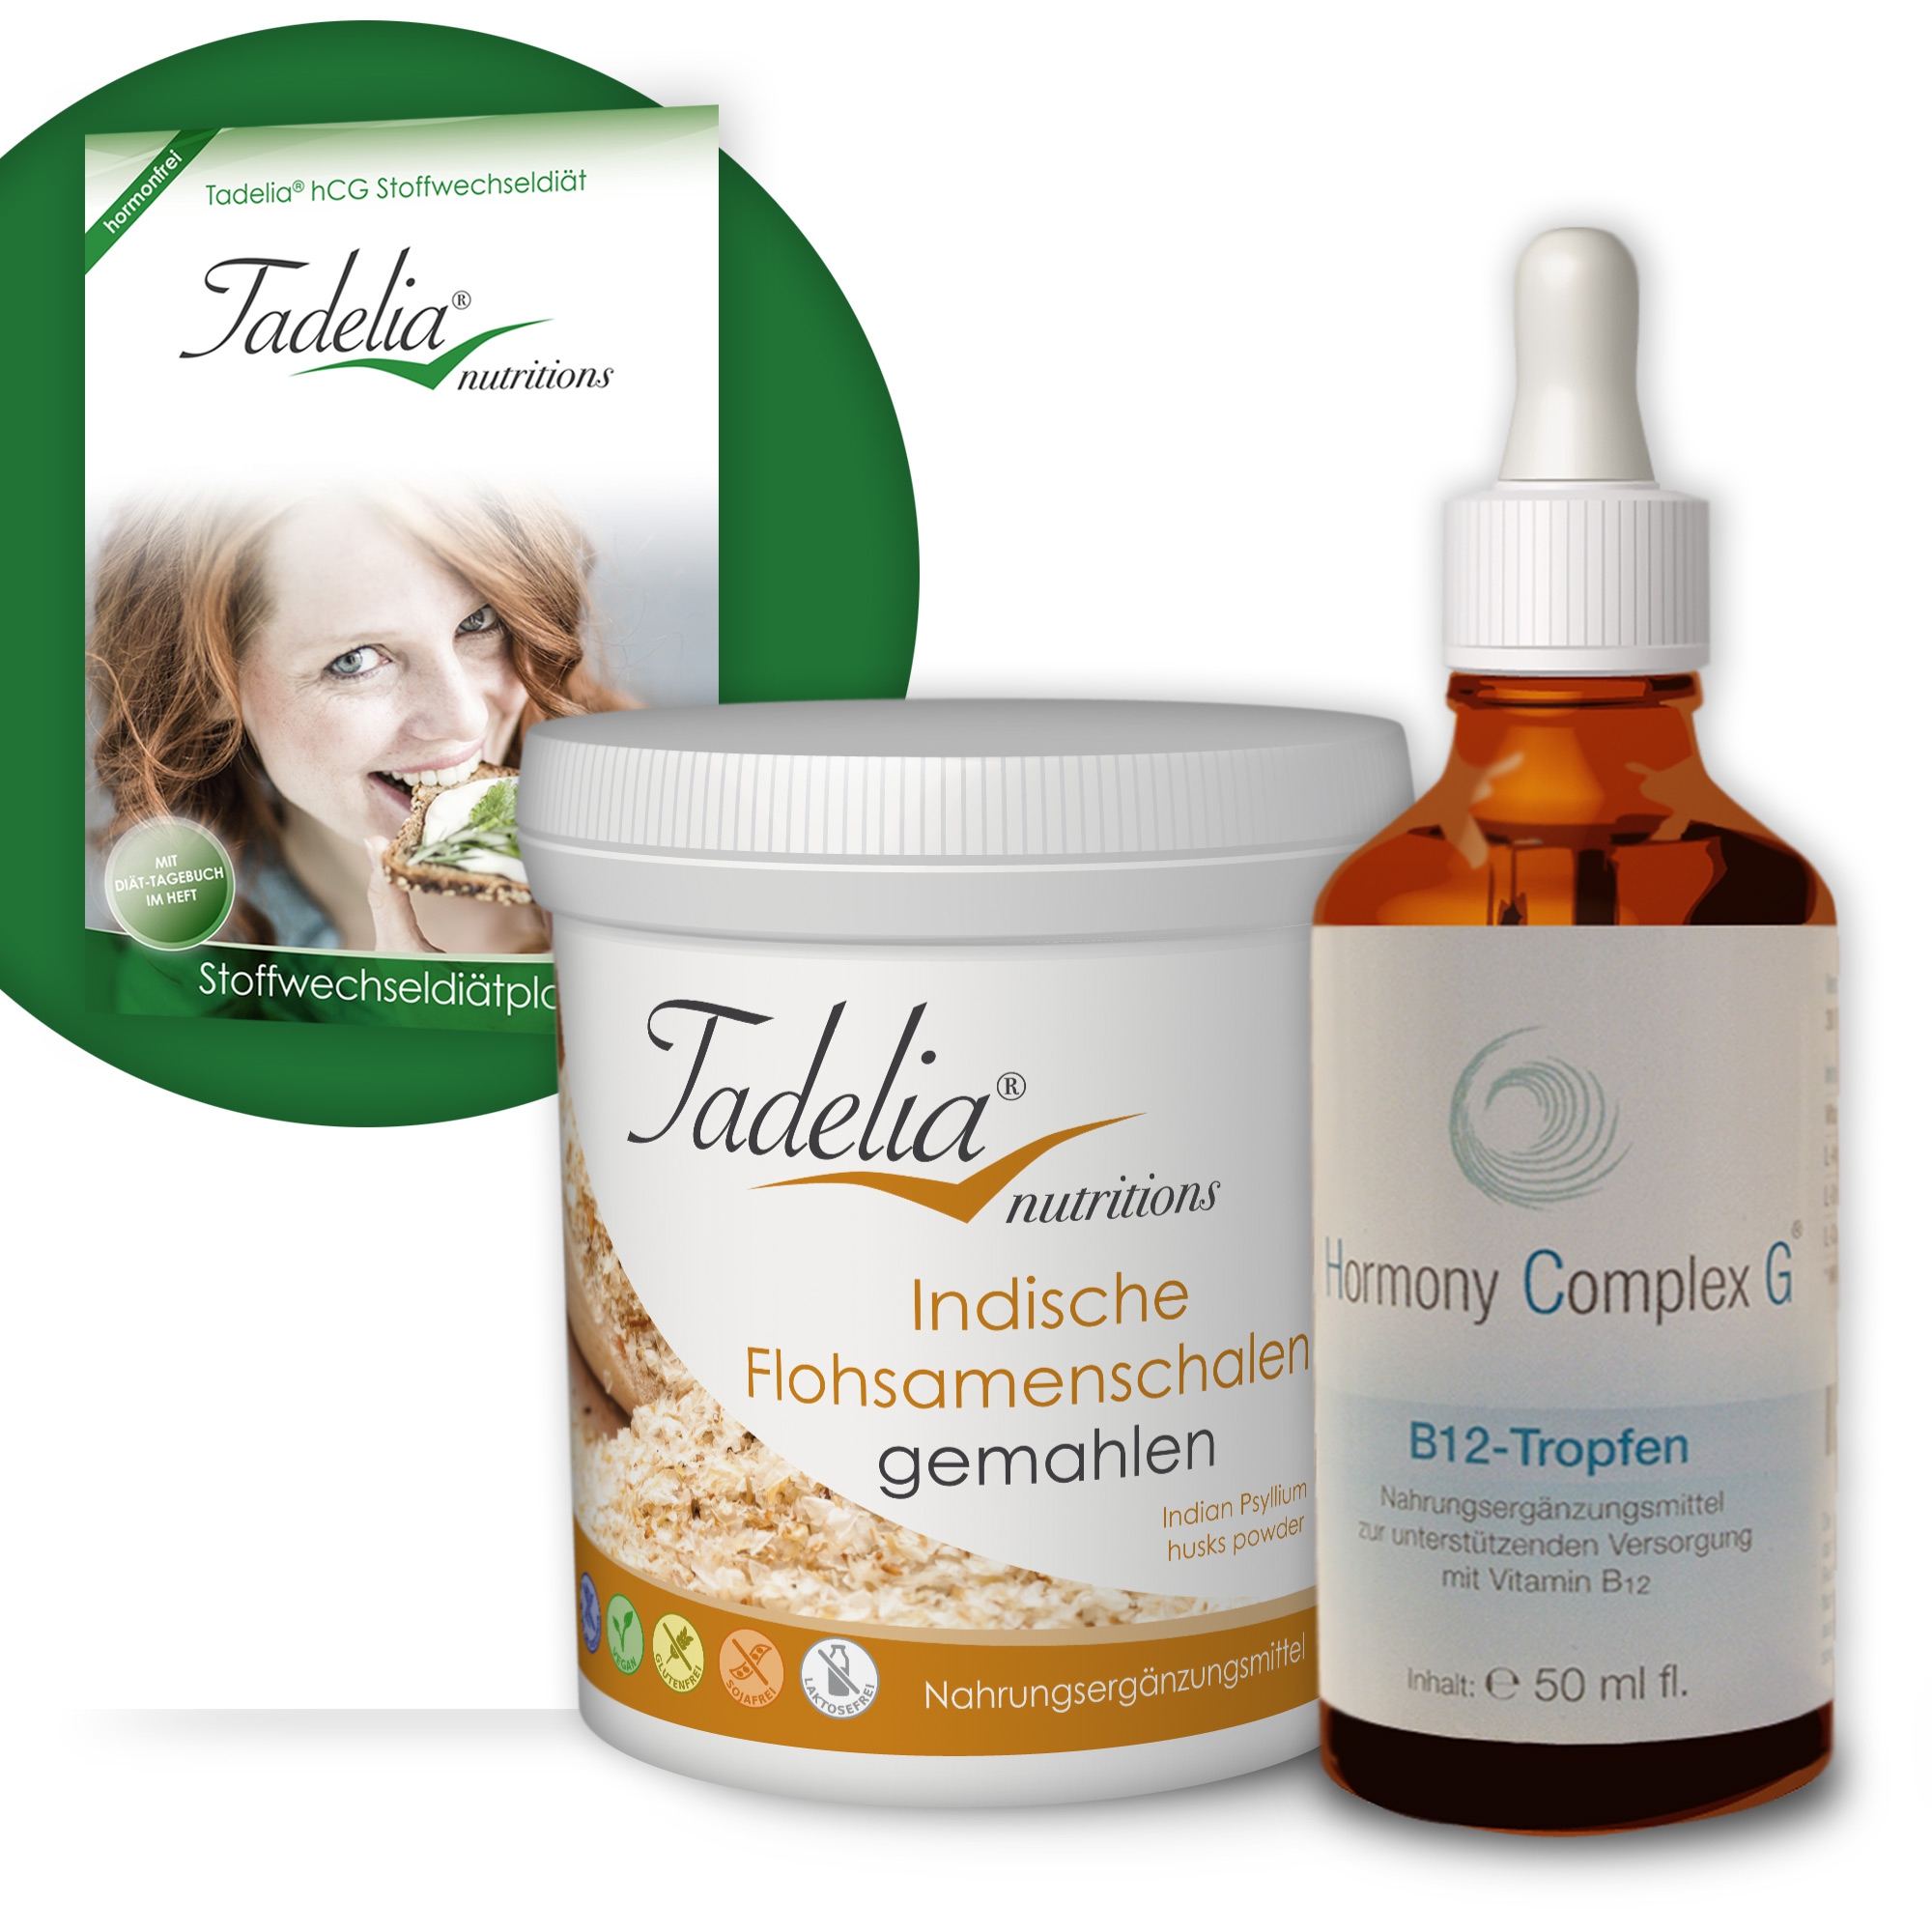 Tadelia® Indische Flohsamenschalen gemahlen mit Tadelia hCG Stoffwechseldiätplan + Hormony Complex G B12 Tropfen